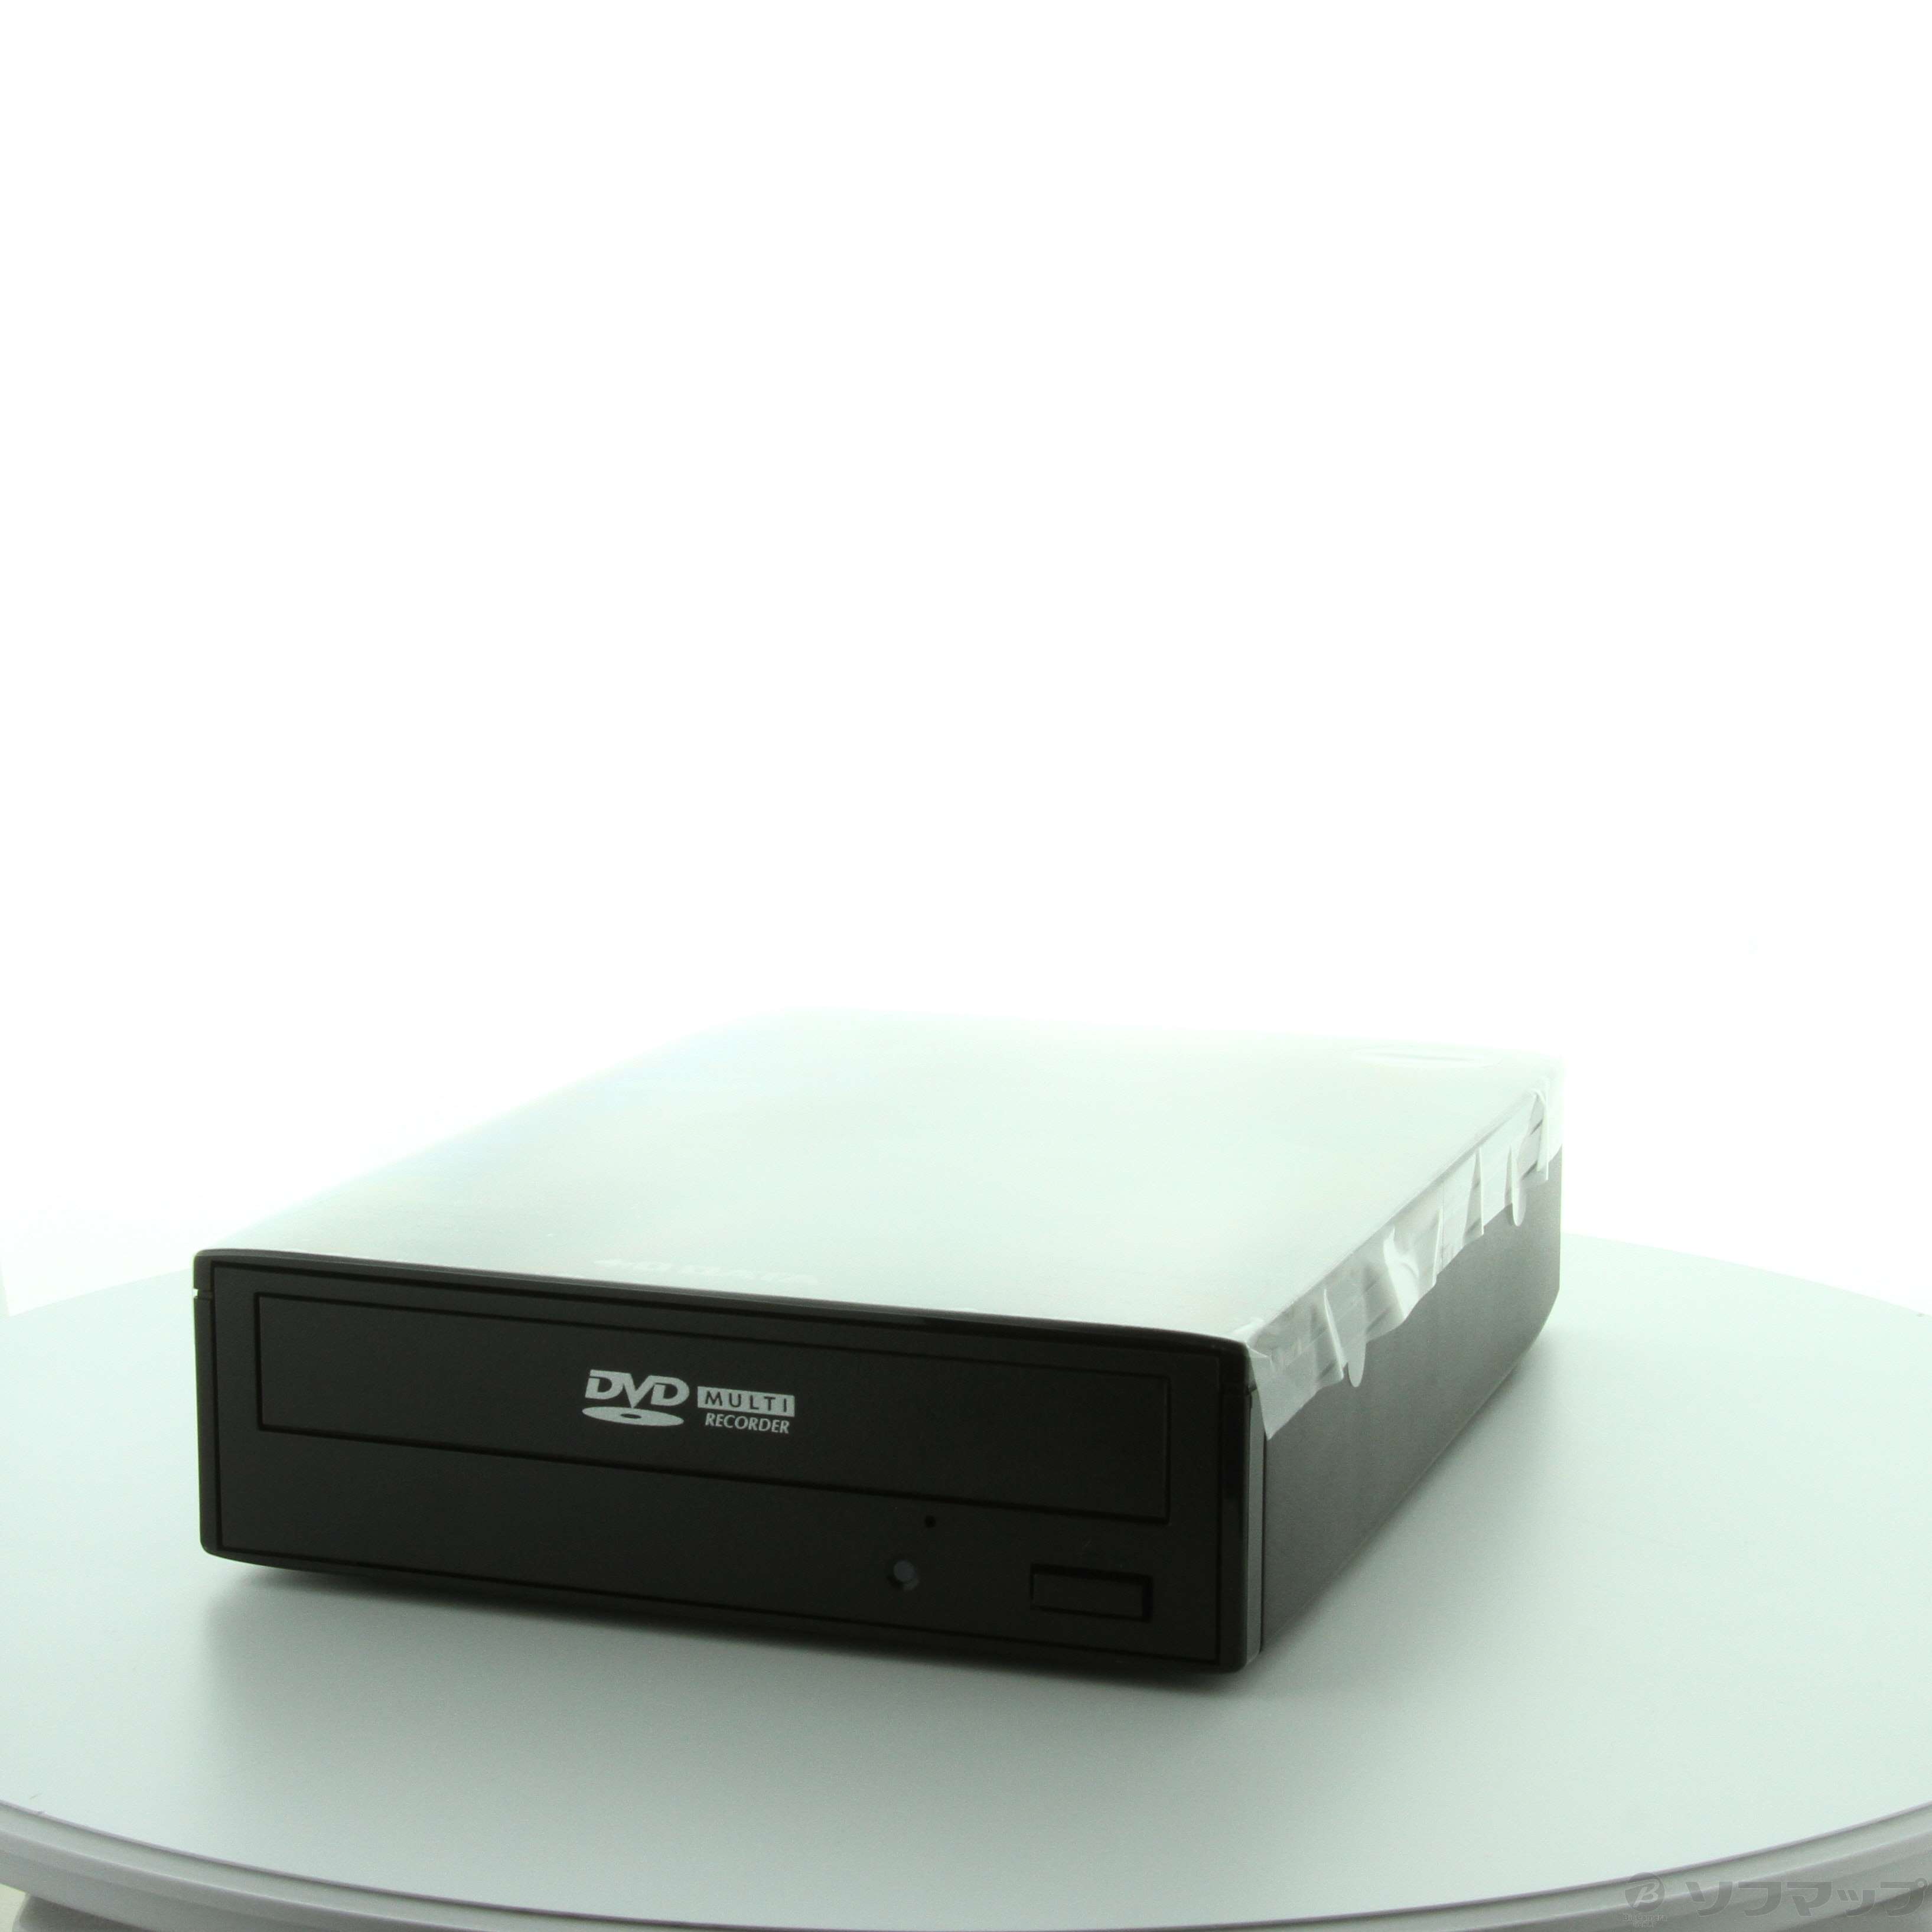 IOデータ Type-C対応 外付型DVDドライブ DVR-UC24 - 内蔵型光学ドライブ